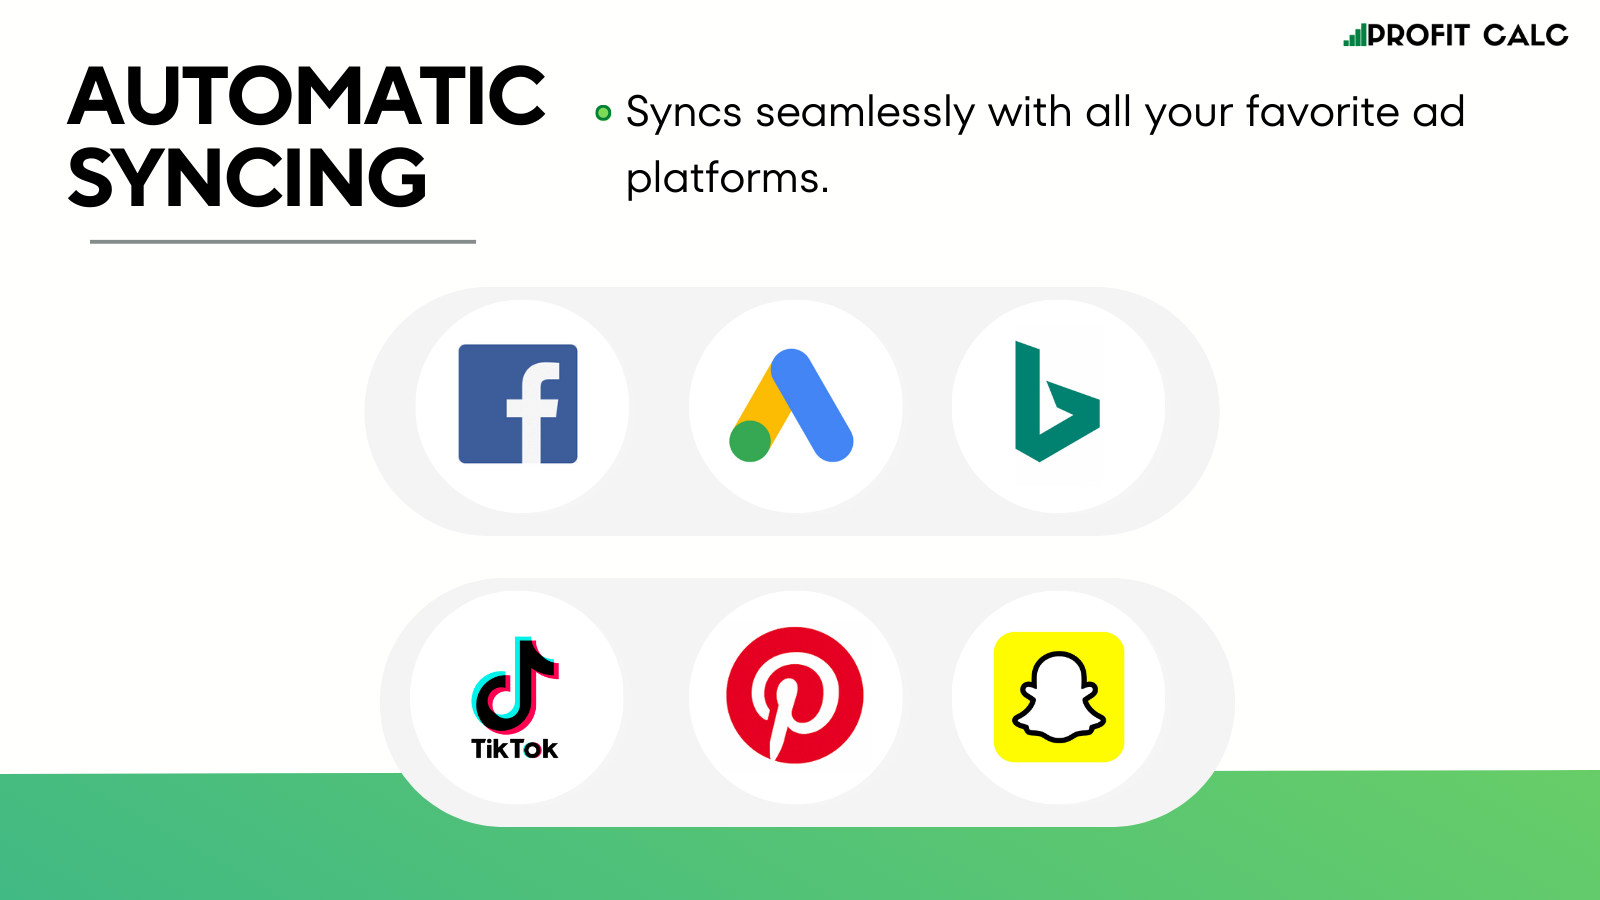 Facebook, Google, Bing, Tik Tok, Snapchat, & Pinterest synkronisering